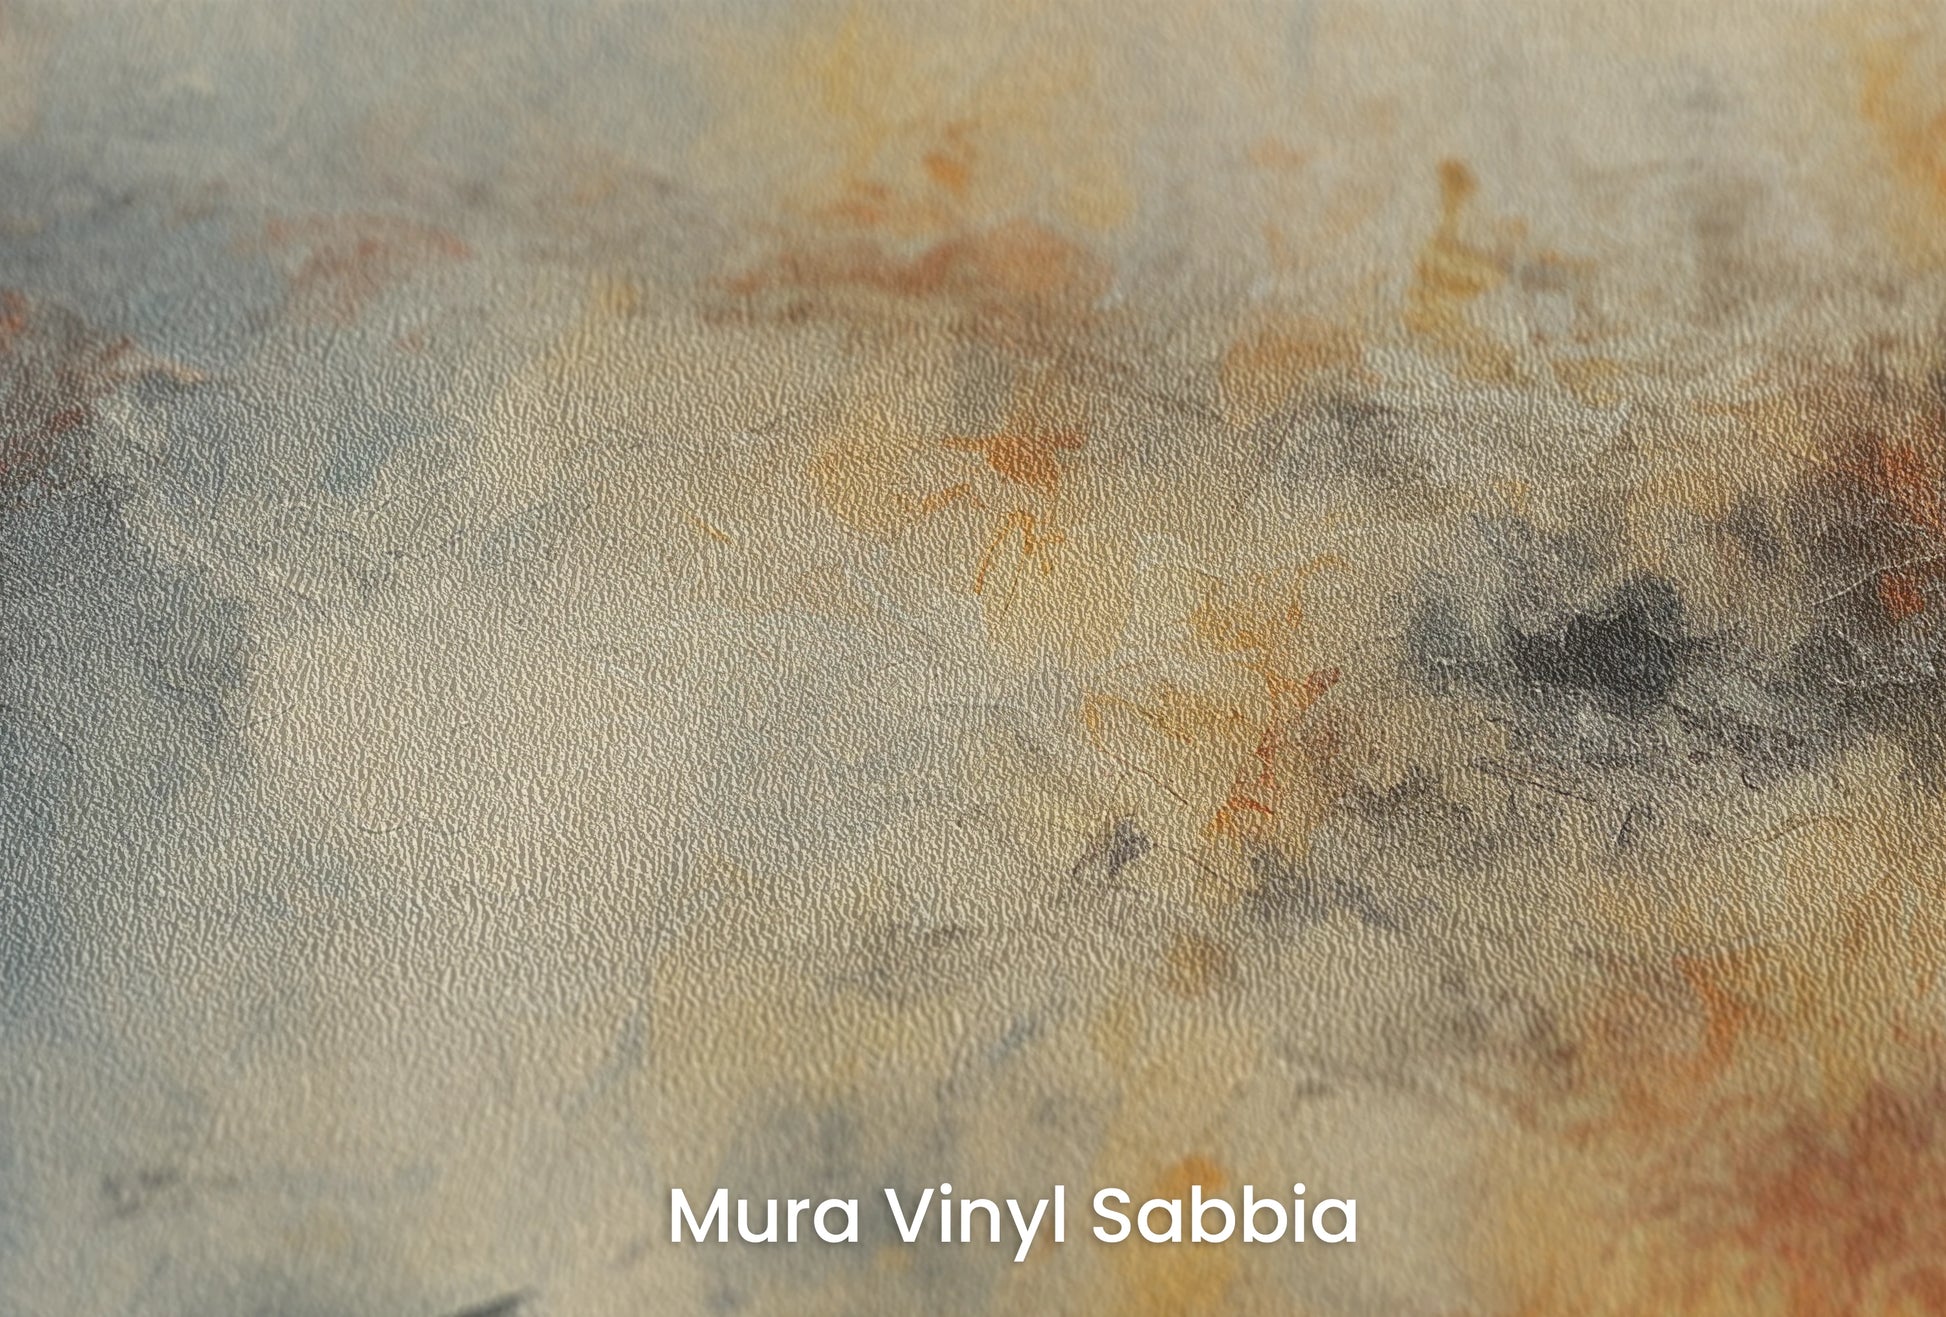 Zbliżenie na artystyczną fototapetę o nazwie Lunar Solitude na podłożu Mura Vinyl Sabbia struktura grubego ziarna piasku.